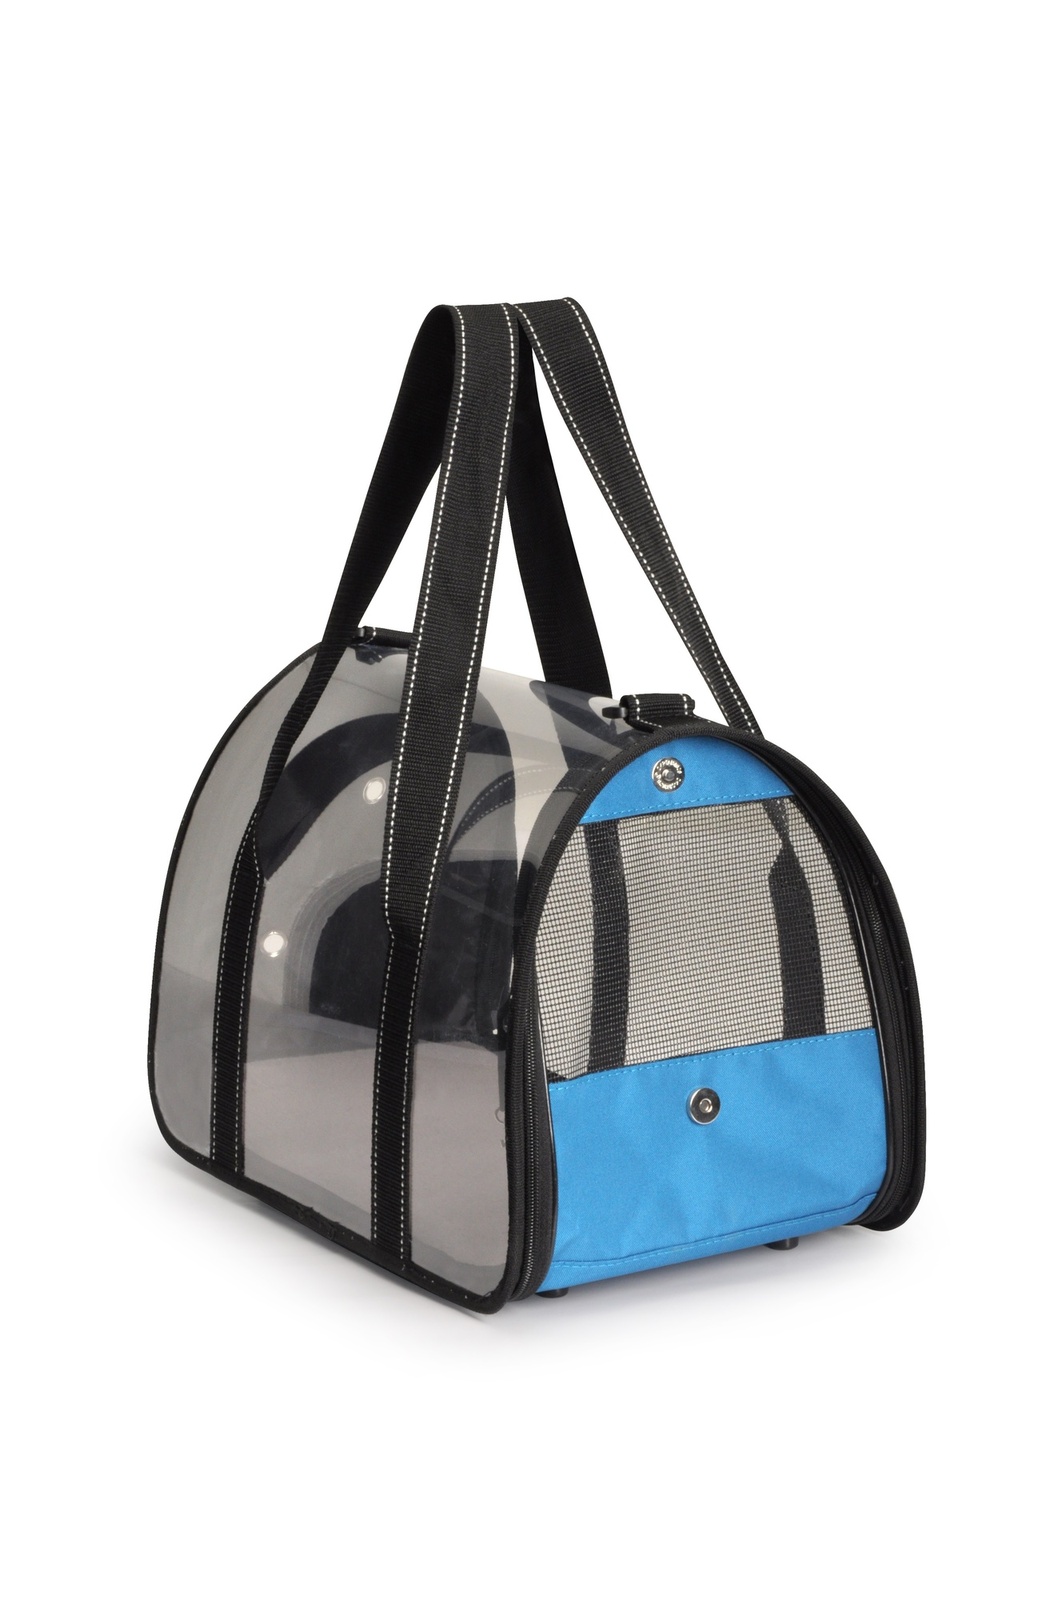 Camon Camon сумка-переноска прозрачная, 42x25x25 см, голубая (670 г) camon camon сумка переноска для животных стеганая синяя 42x25x25 см 2